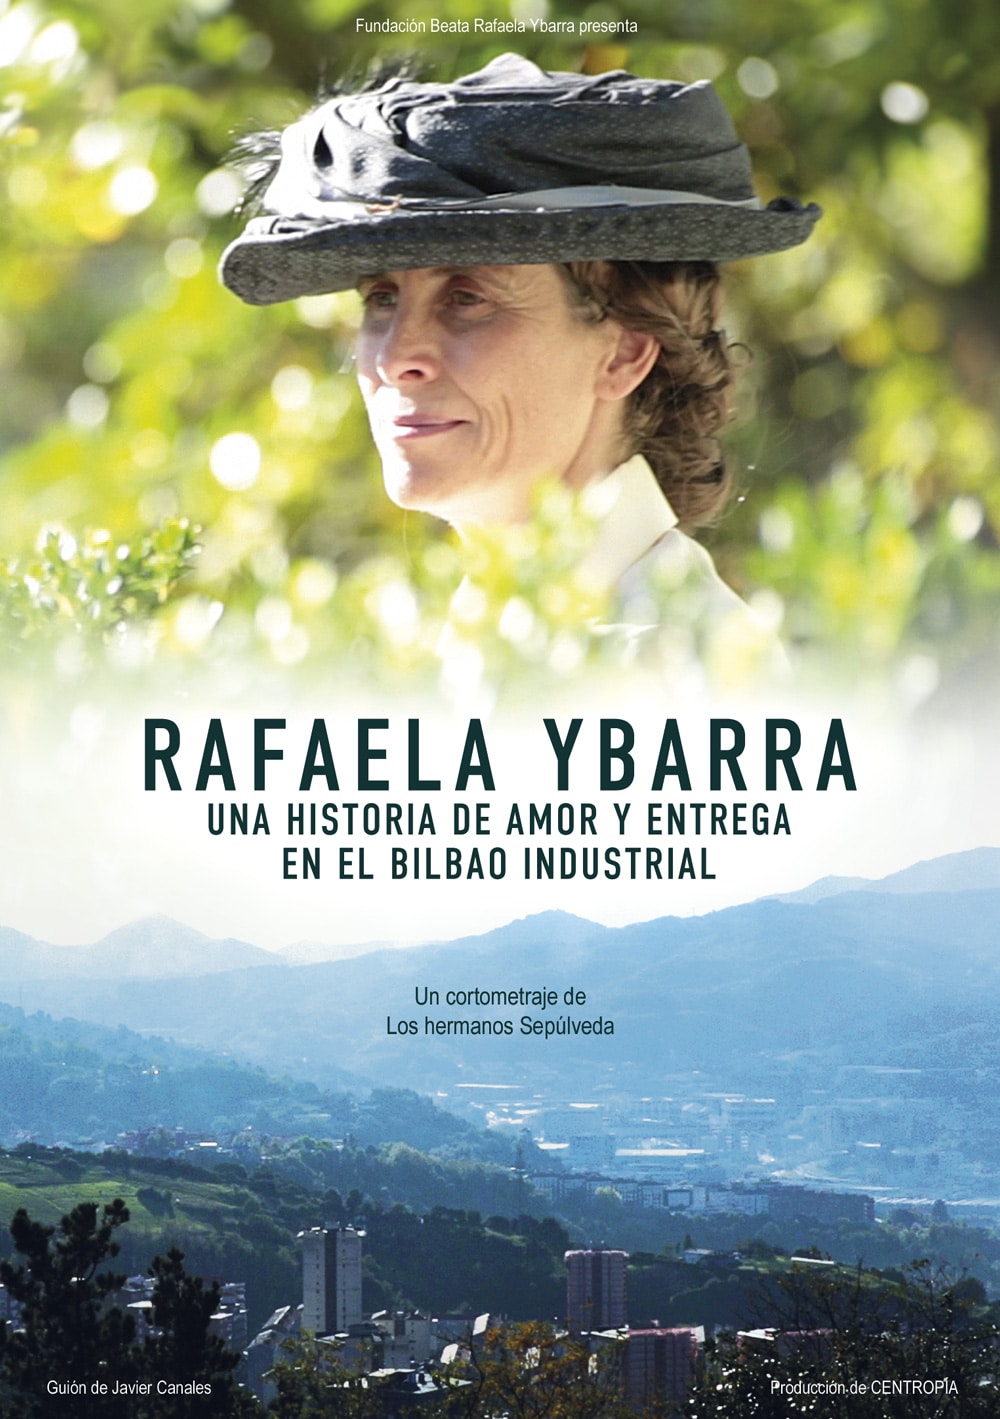 Rafaela Ybarra